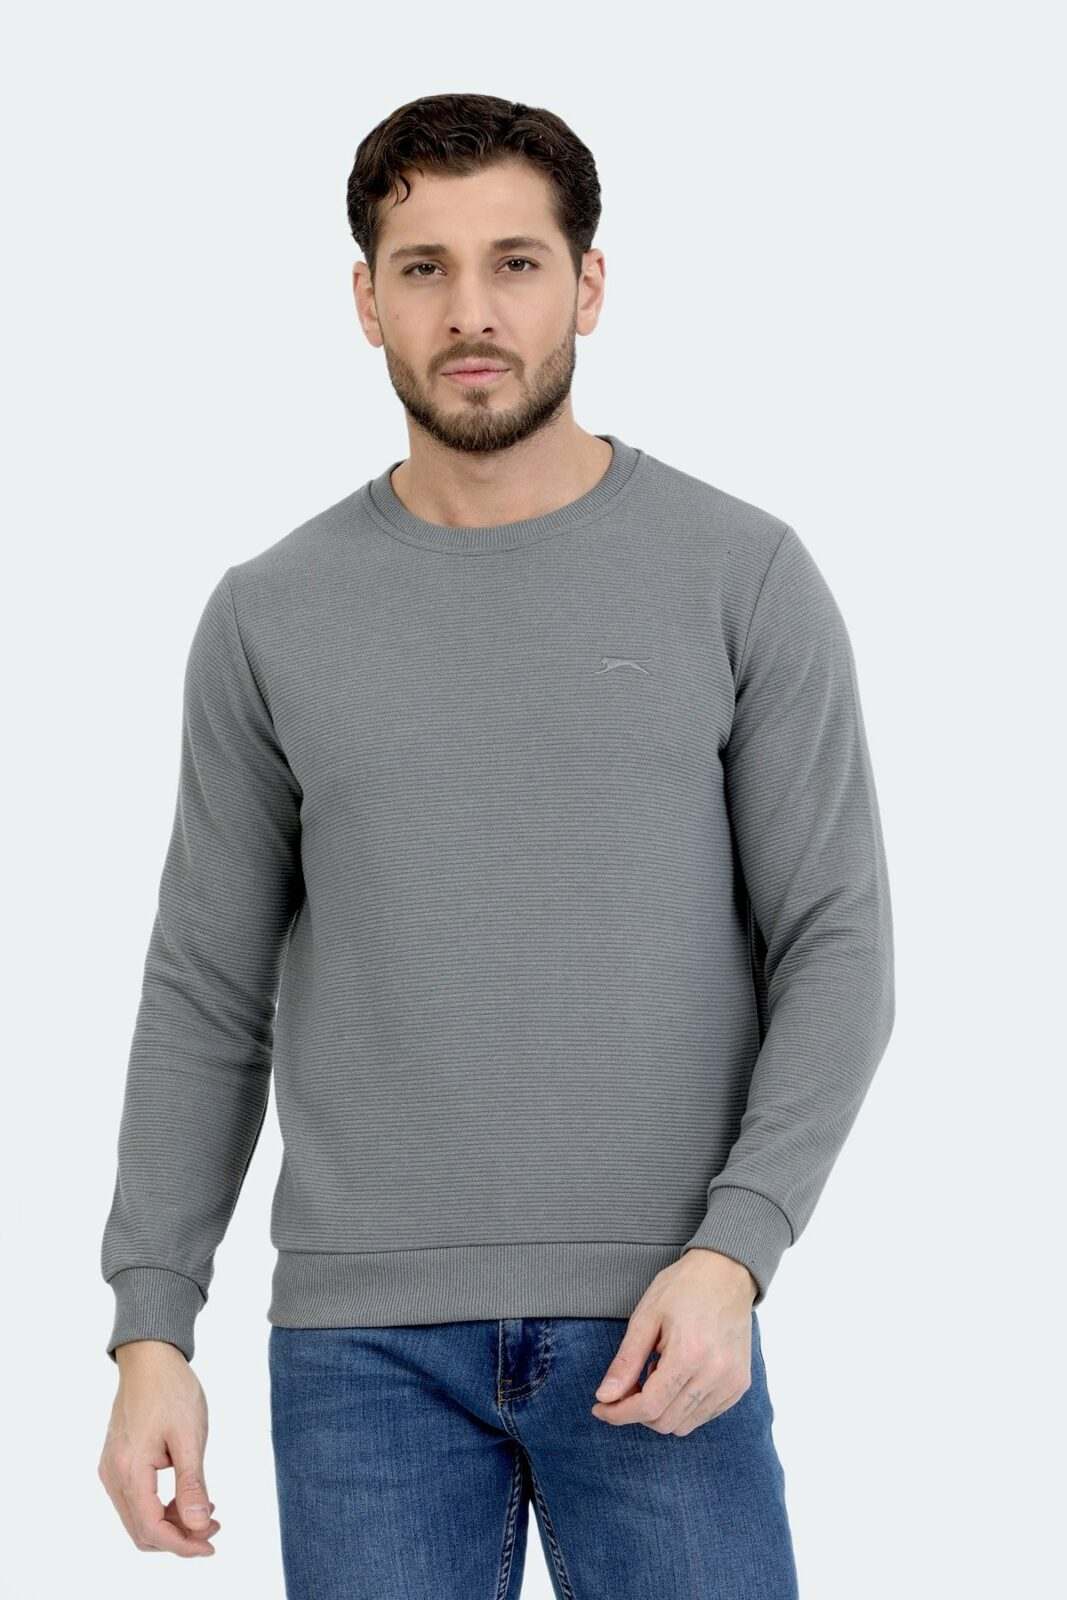 Slazenger Sports Sweatshirt - Gray